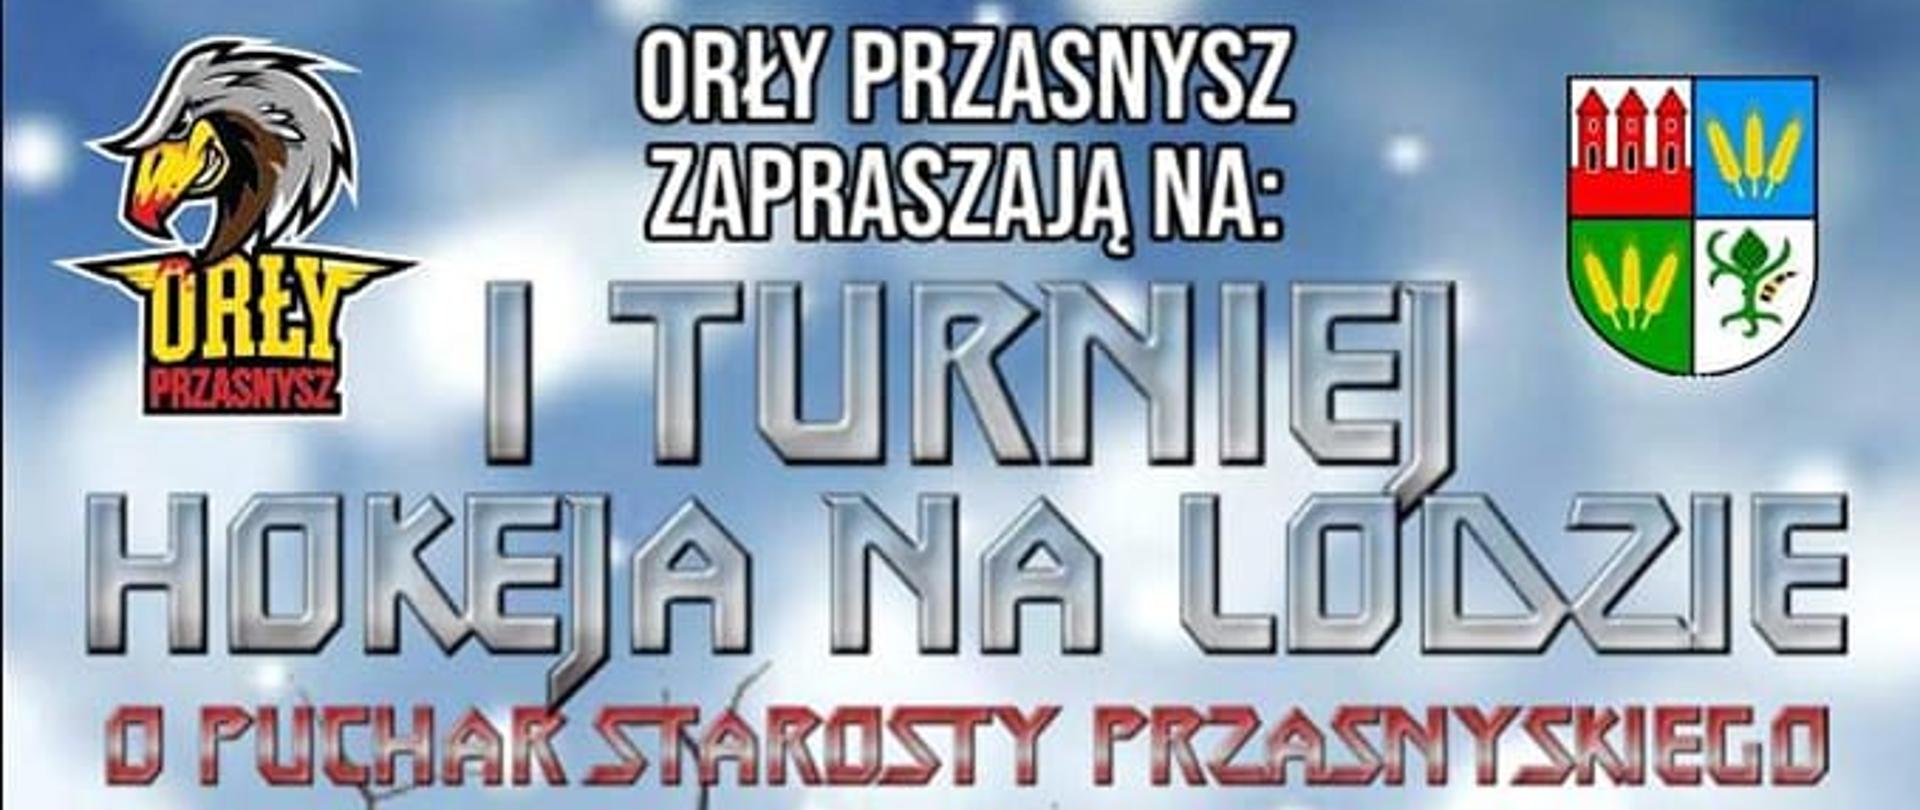 Plakat zapraszający do udziału w charytatywnym turnieju hokeja na lodzie o puchar starosty, będącego jednocześnie zbiórką na leczenie Ani Gruszki. Treść w artykule.